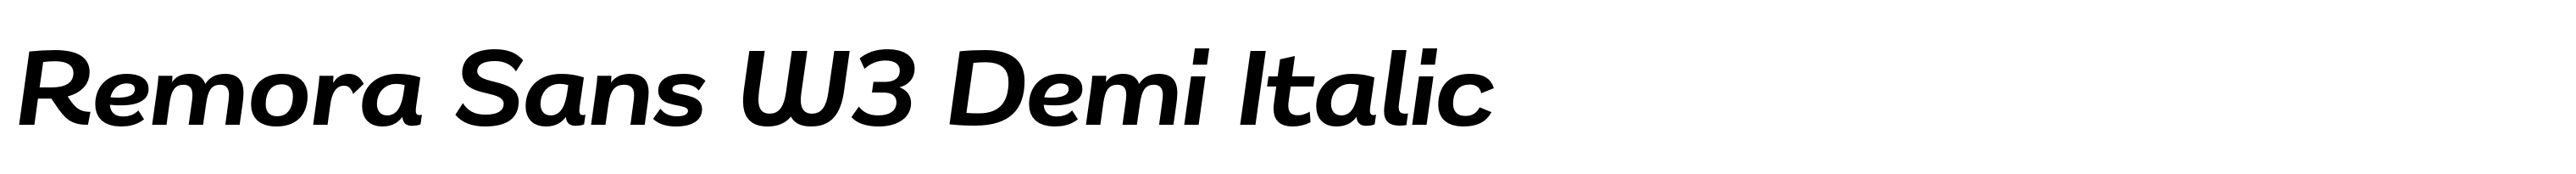 Remora Sans W3 Demi Italic